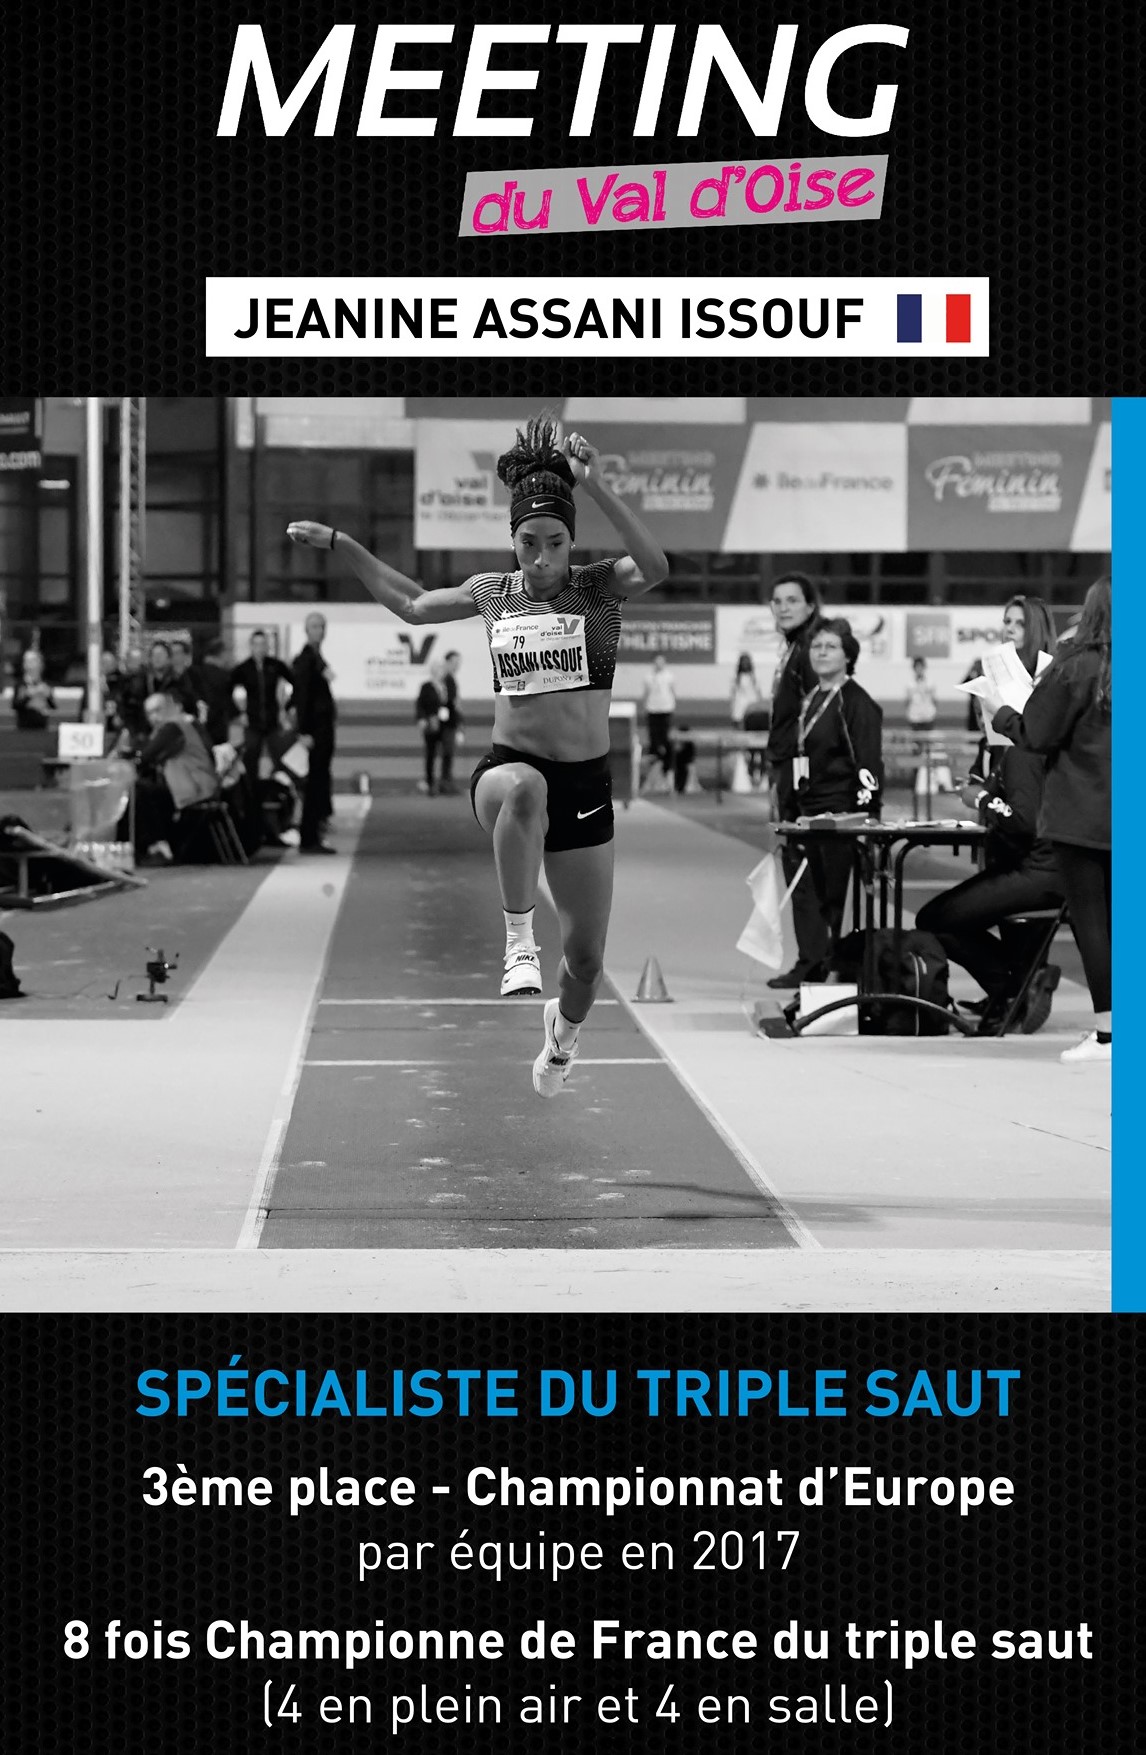 Meeting du Val d'Oise 13 février 2021 - Jeanine Assani Issouf